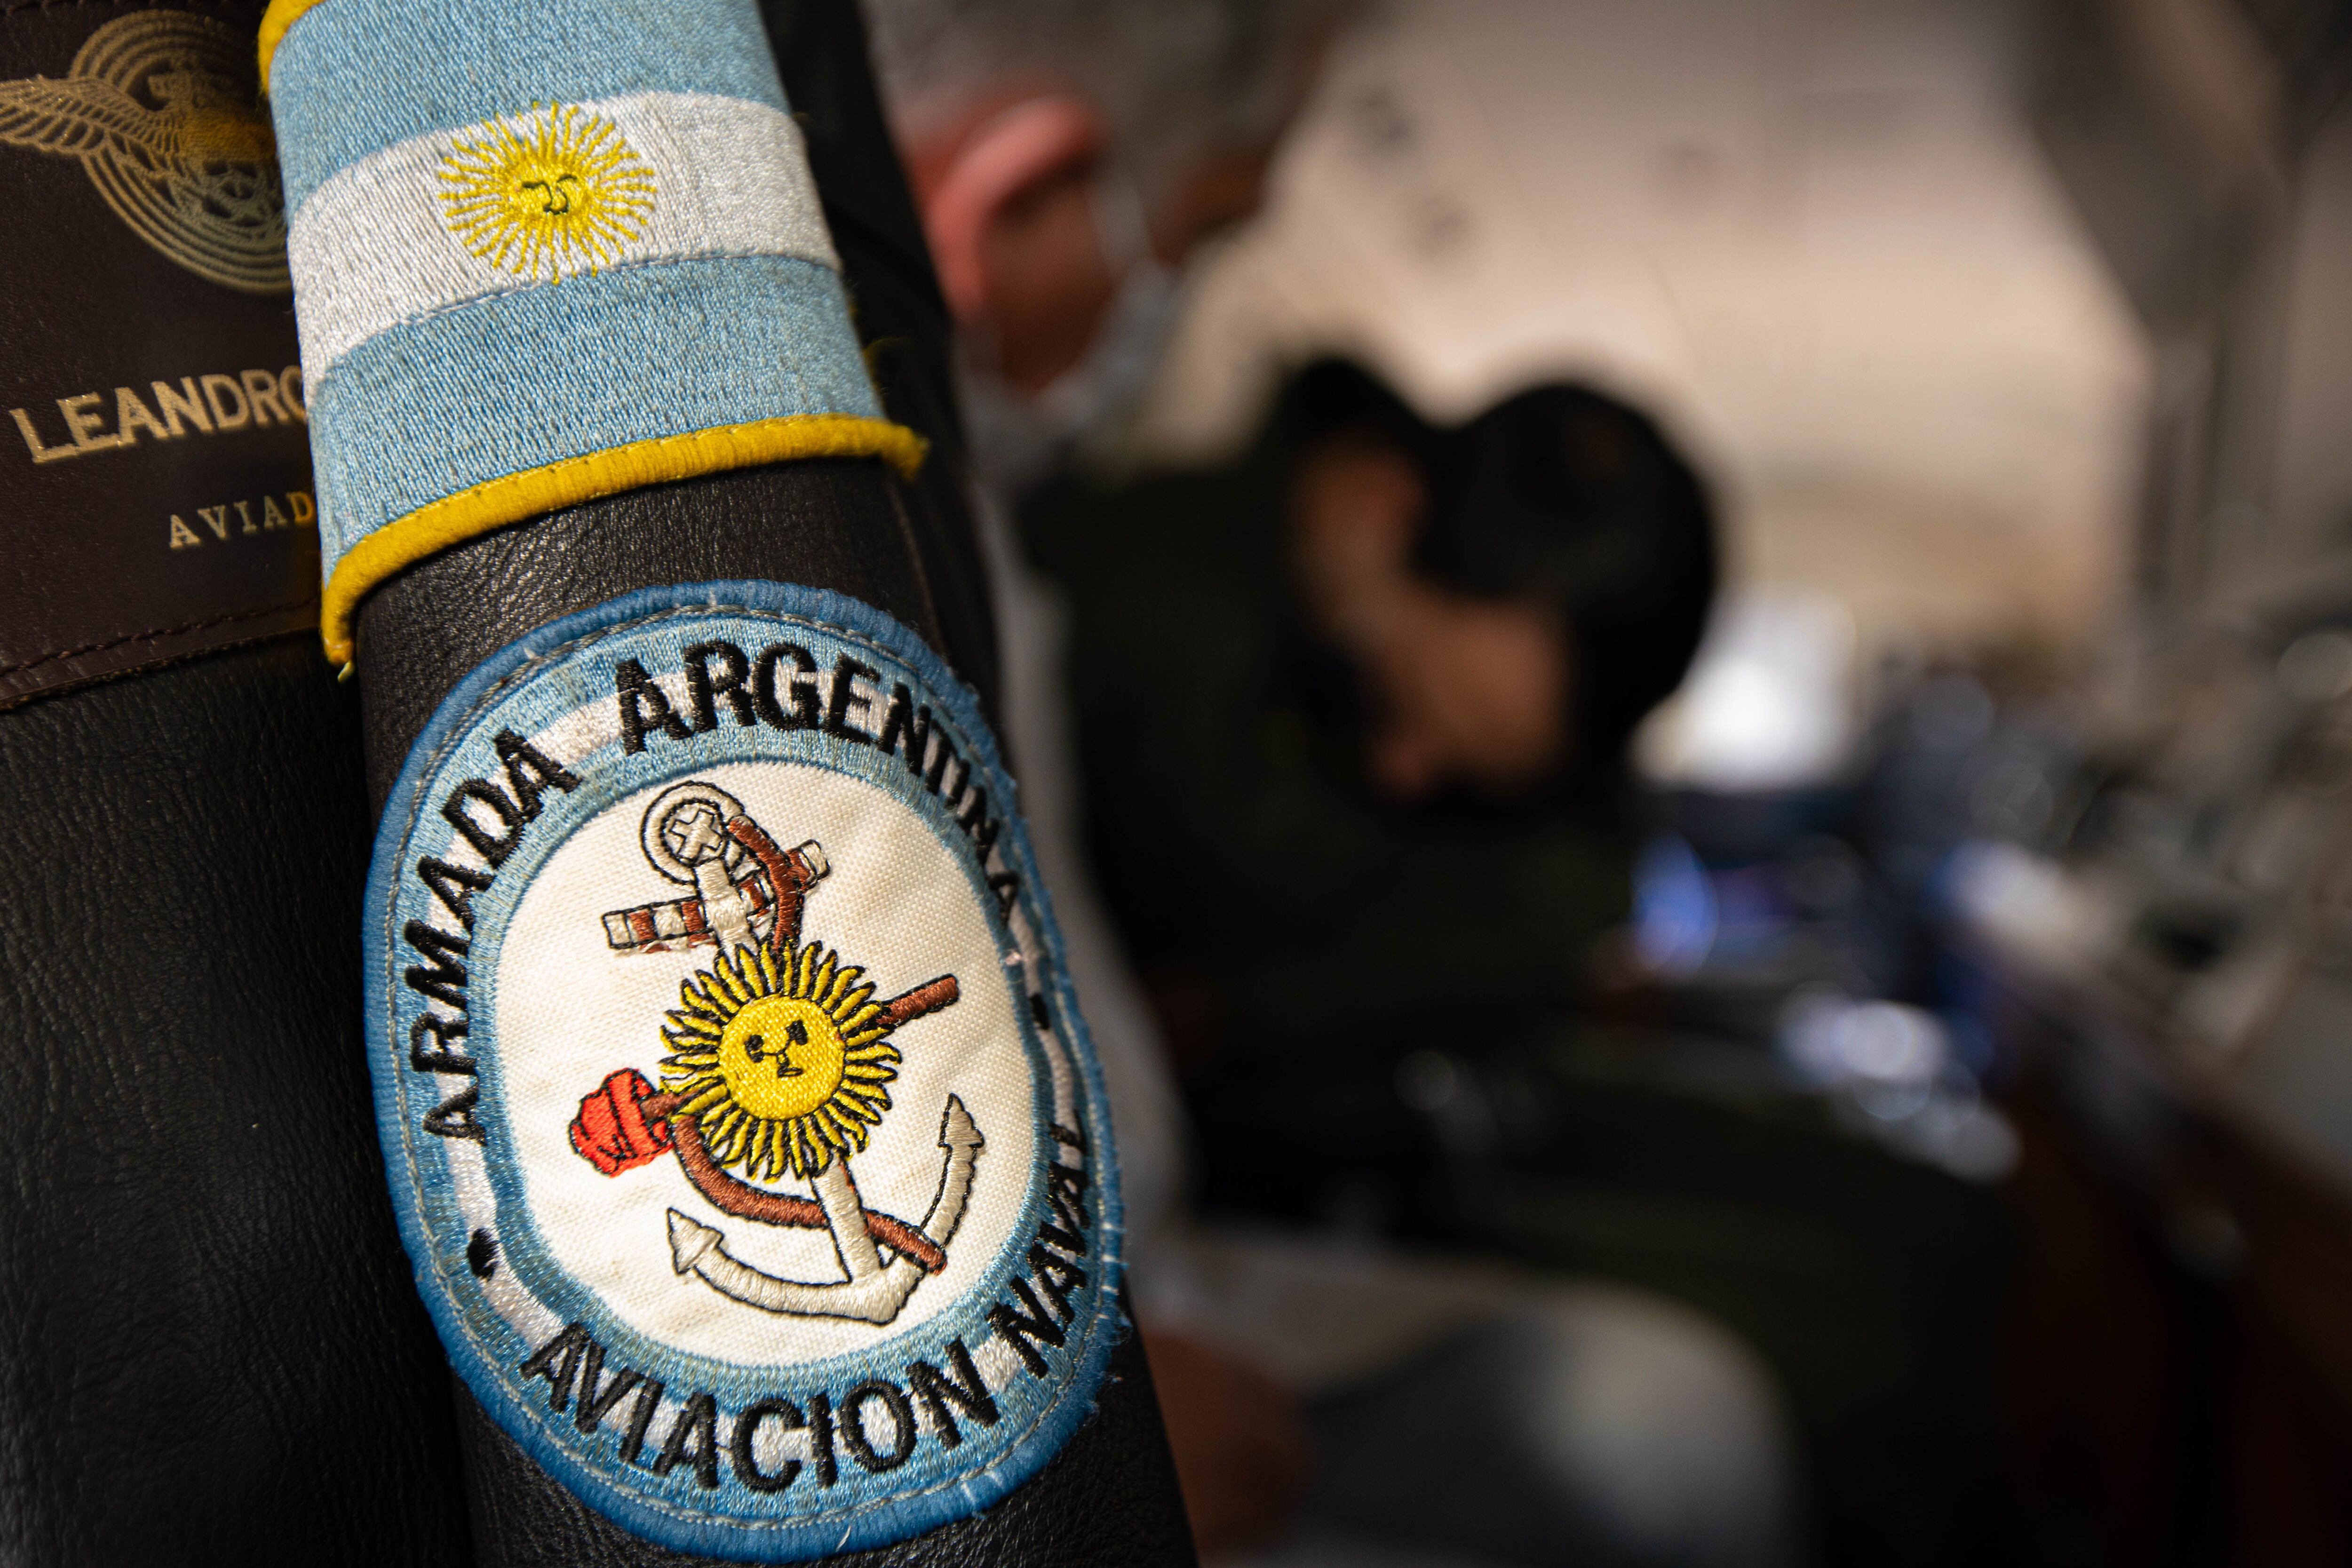  La Aviación Naval es uno de los cuatros componentes principales de la Armada Argentina junto con. La flota de mar, la Infantería de Marina y la Fuerza de submarinos